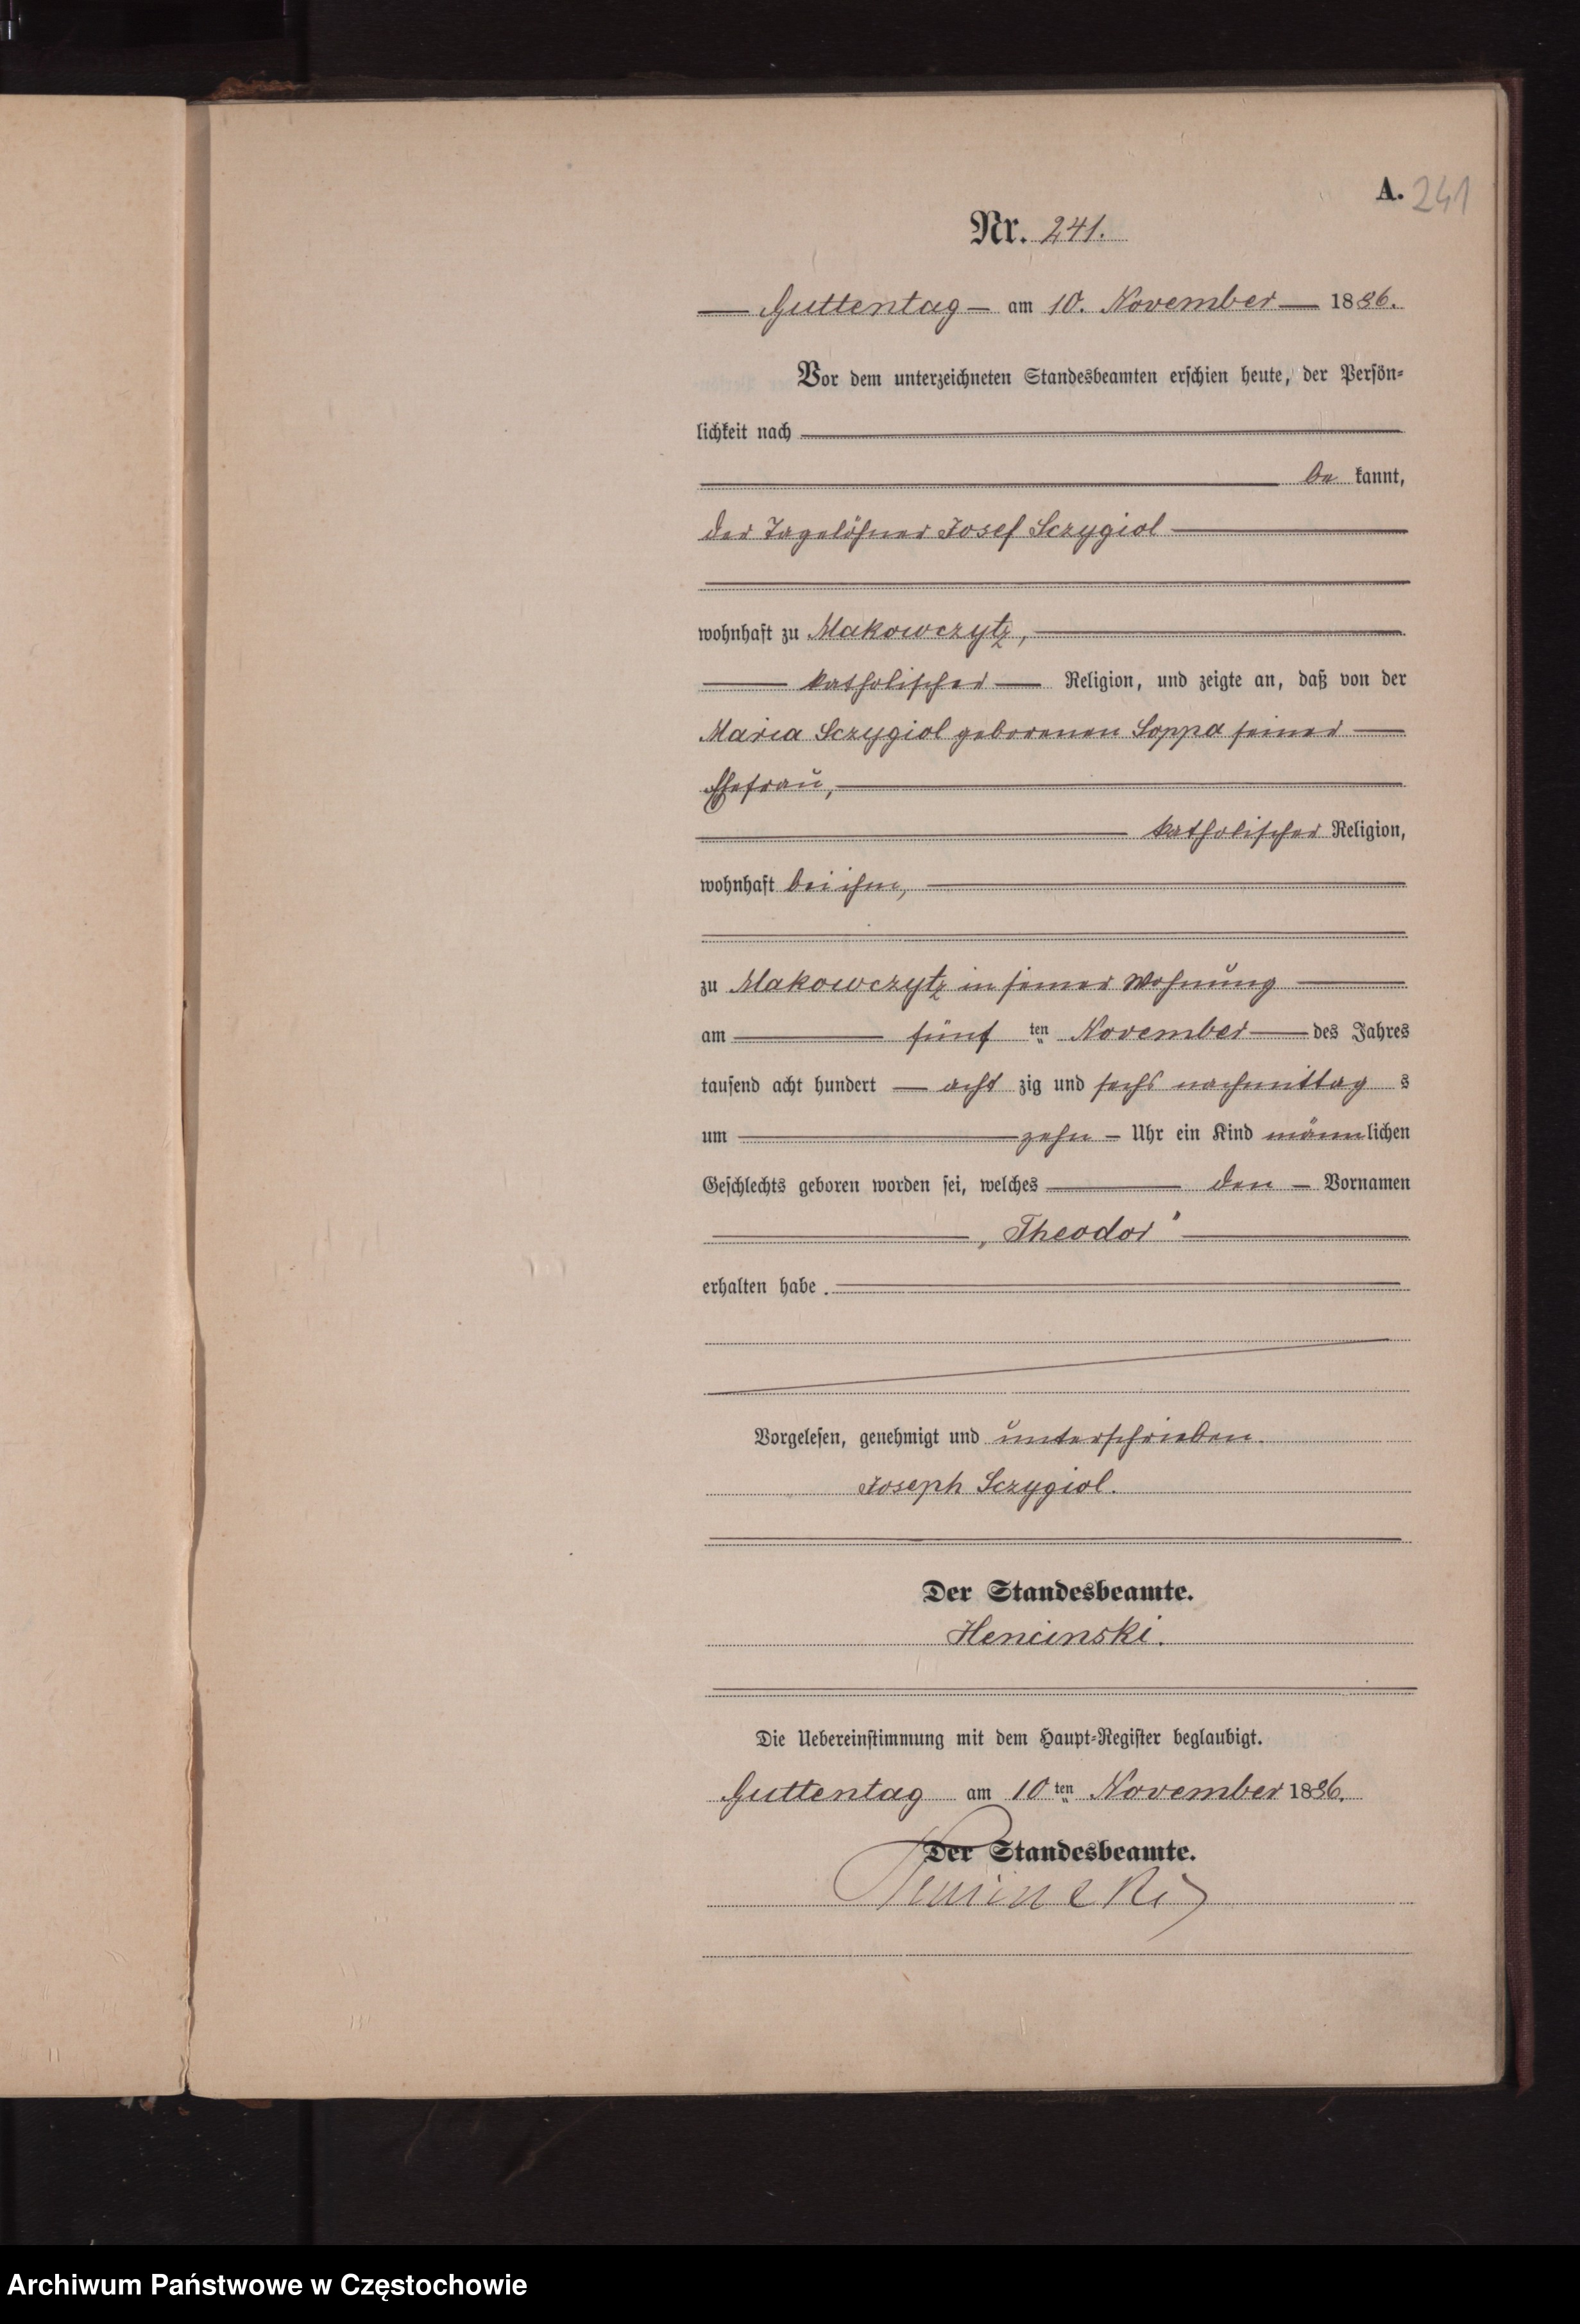 Skan z jednostki: Geburts - Neben Register des Königlich Preussischen Standesamts Guttentag im Kreise Lublinitz pro 1886.